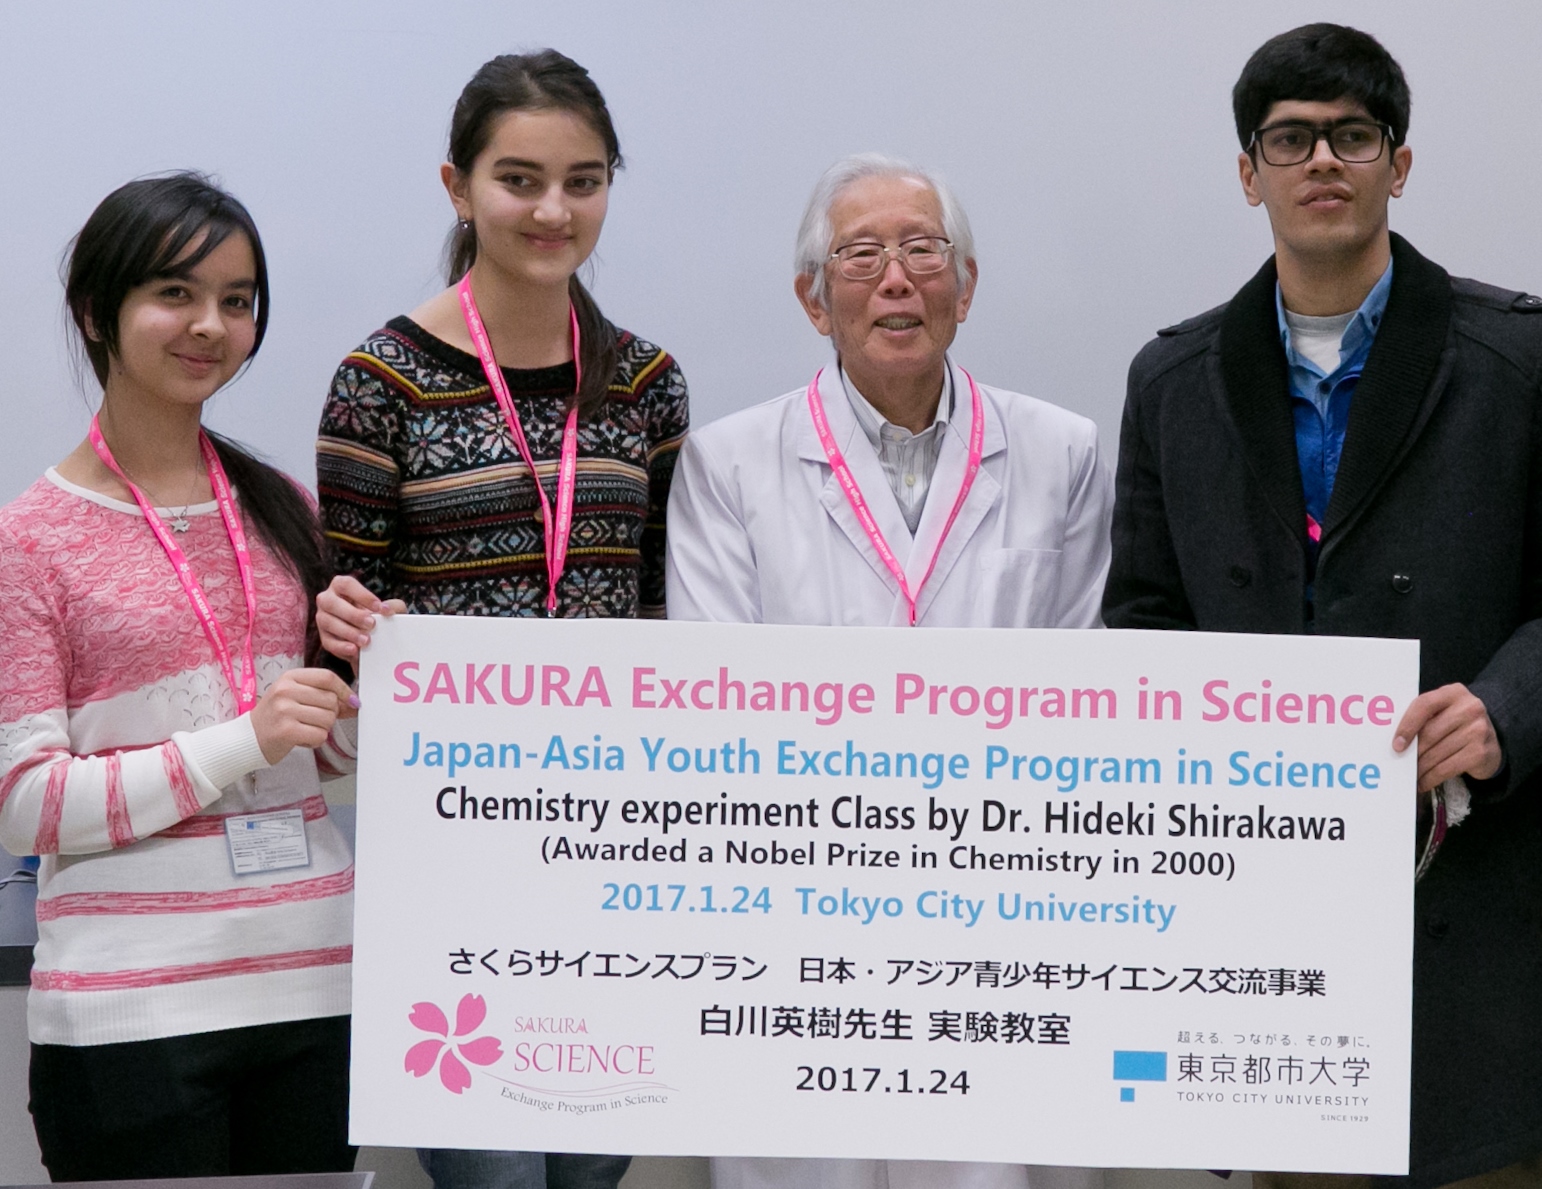 ノーベル化学賞受賞者の白川英樹博士と東京都市大学の学生が中心となり、アジア各国の高校生に実験教室を開催